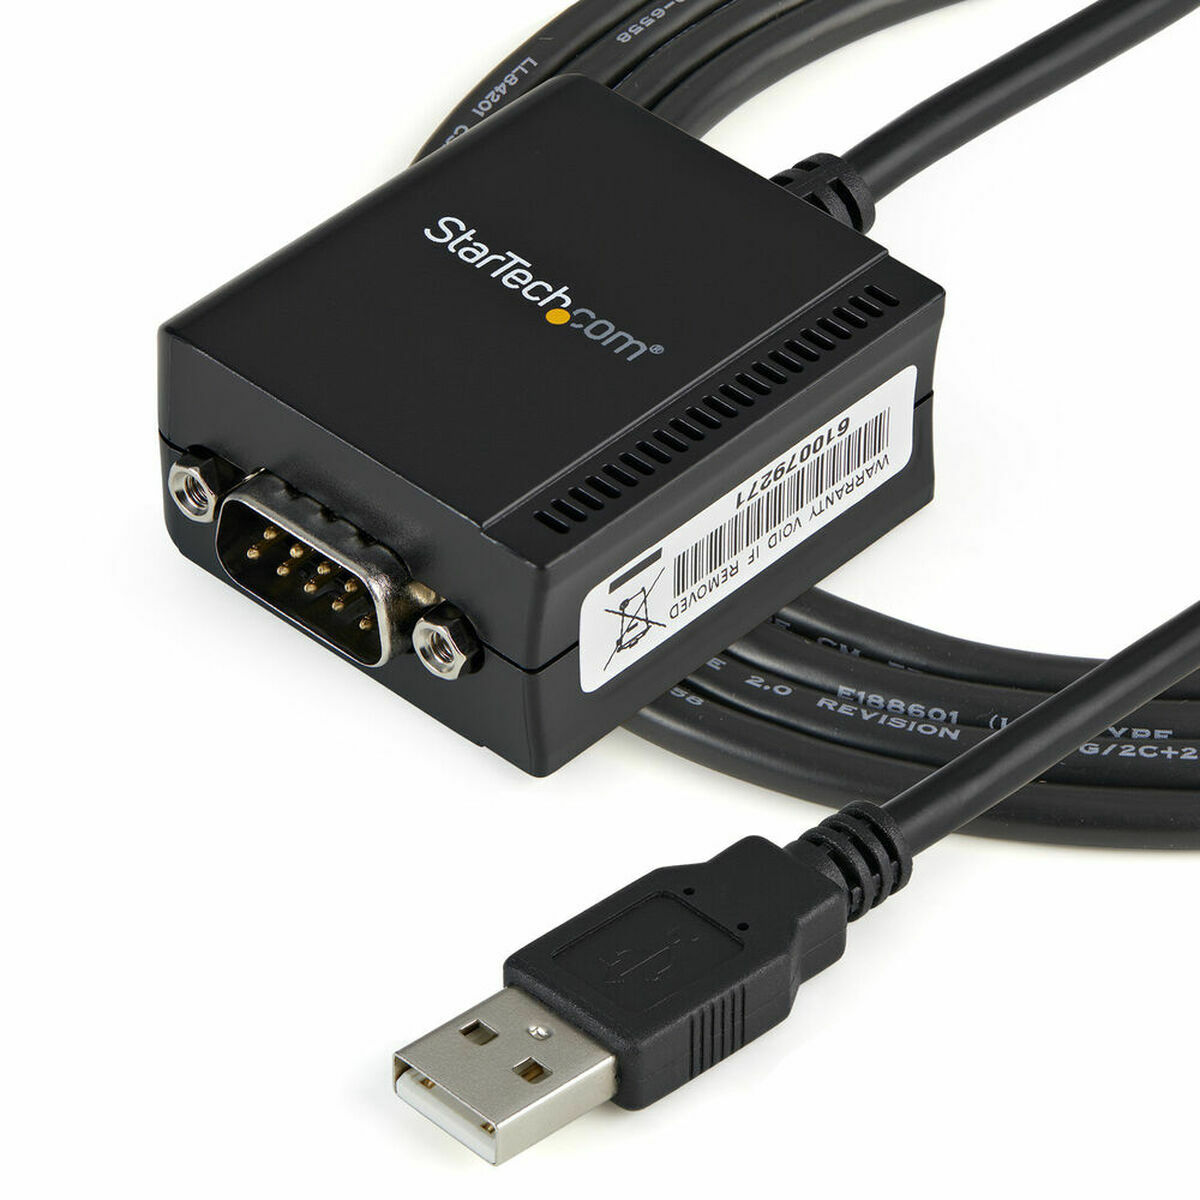 Adapter Startech ICUSB2321F           (1,8 m) USB A 2.0 DB9